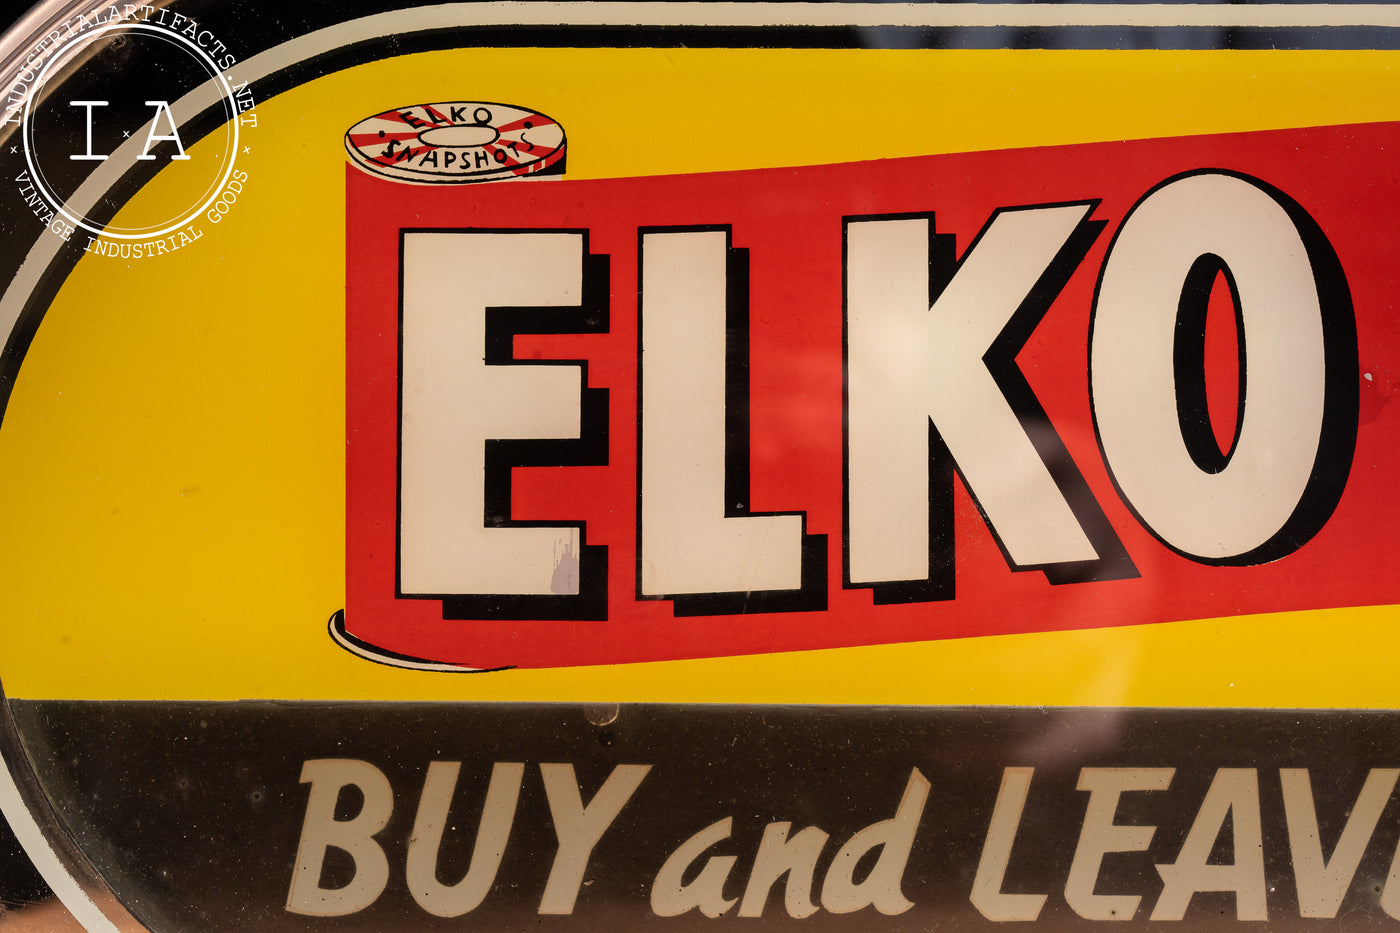 Vintage Lighted Elko Advertising Sign